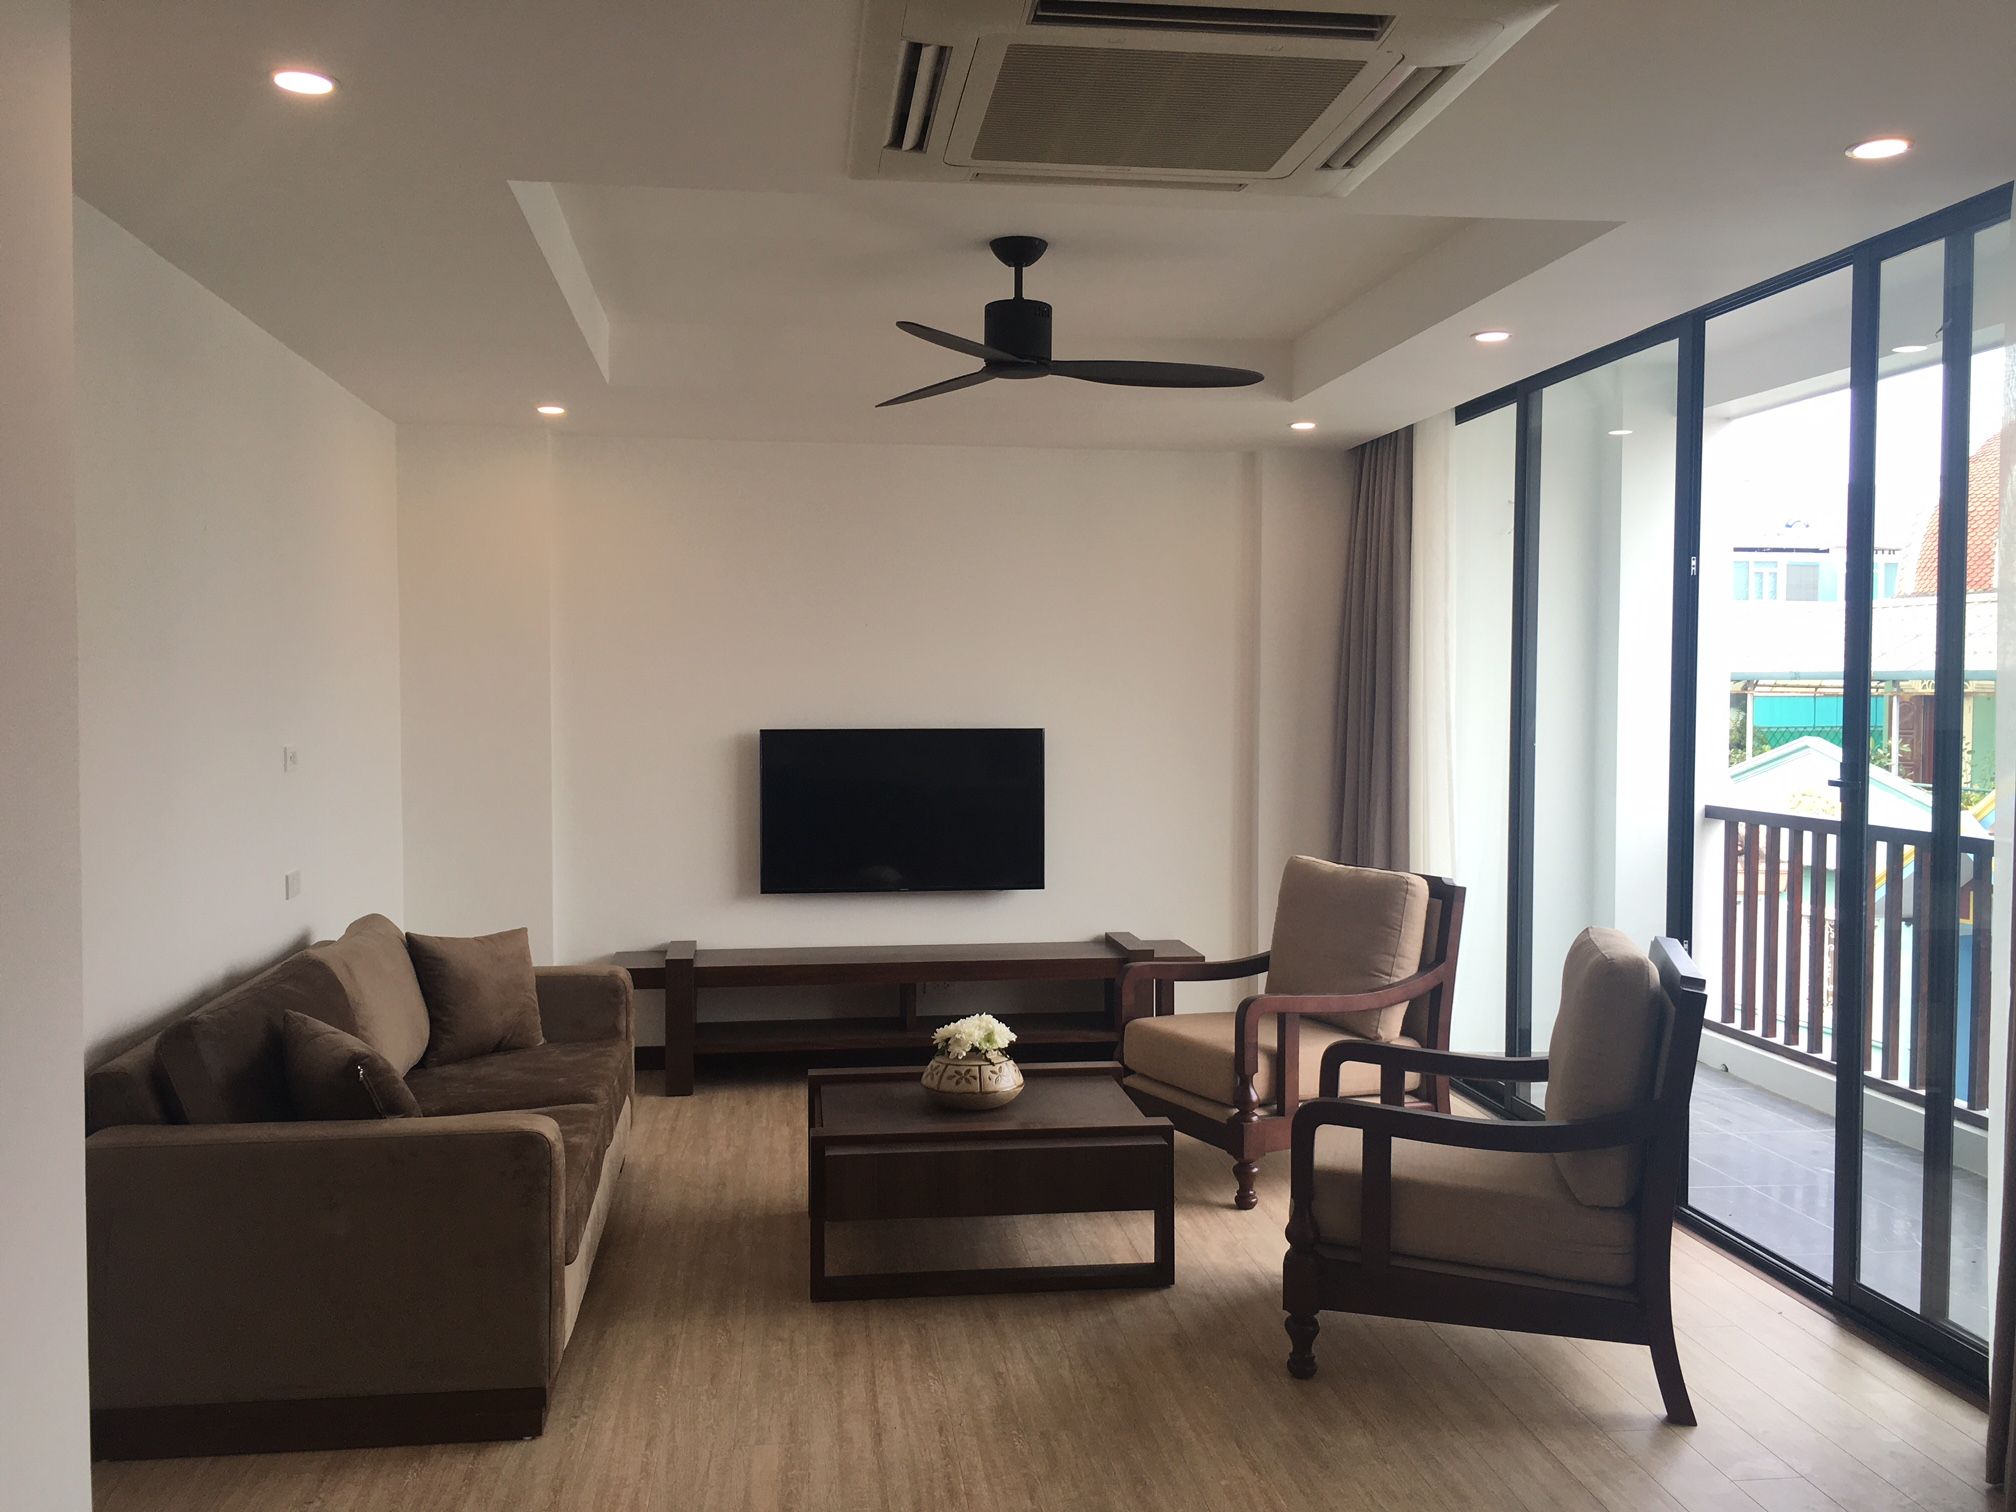 Cho thuê căn hộ dịch vụ 135m2, 3 phòng ngủ tại Xuân Diệu, quận Tây Hồ